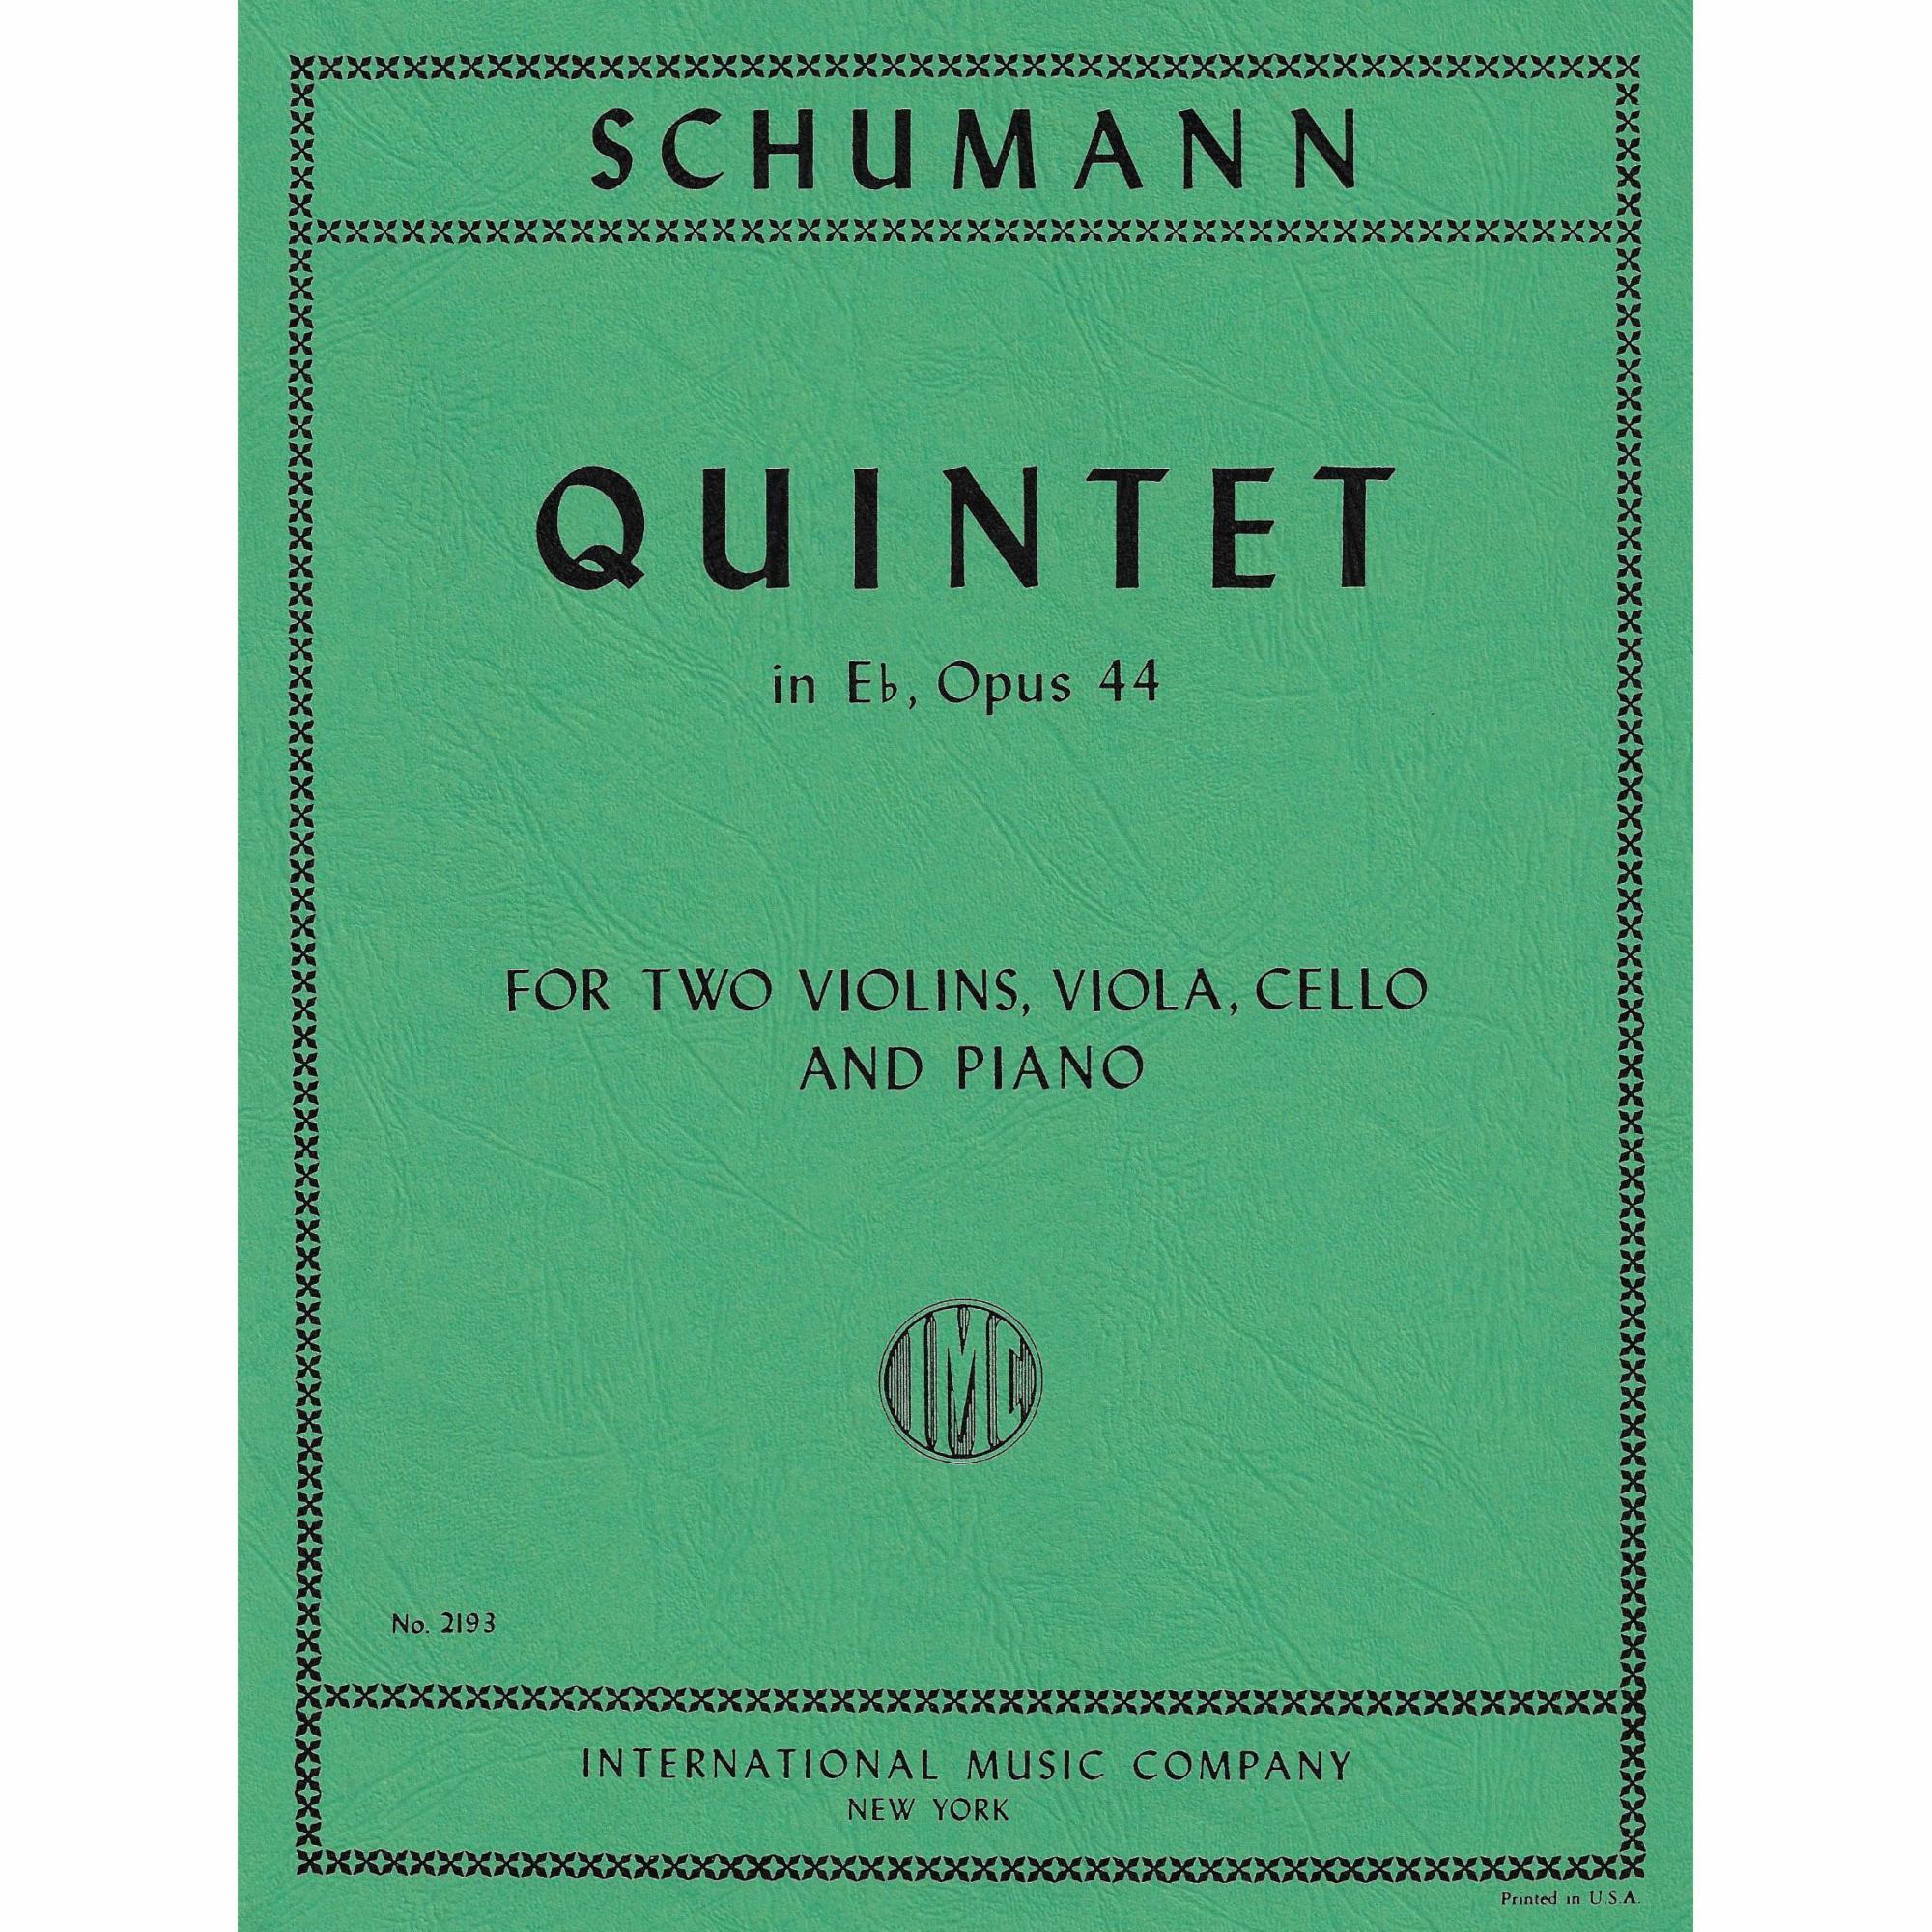 Schumann -- Piano Quintet in E-flat Major, Op. 44